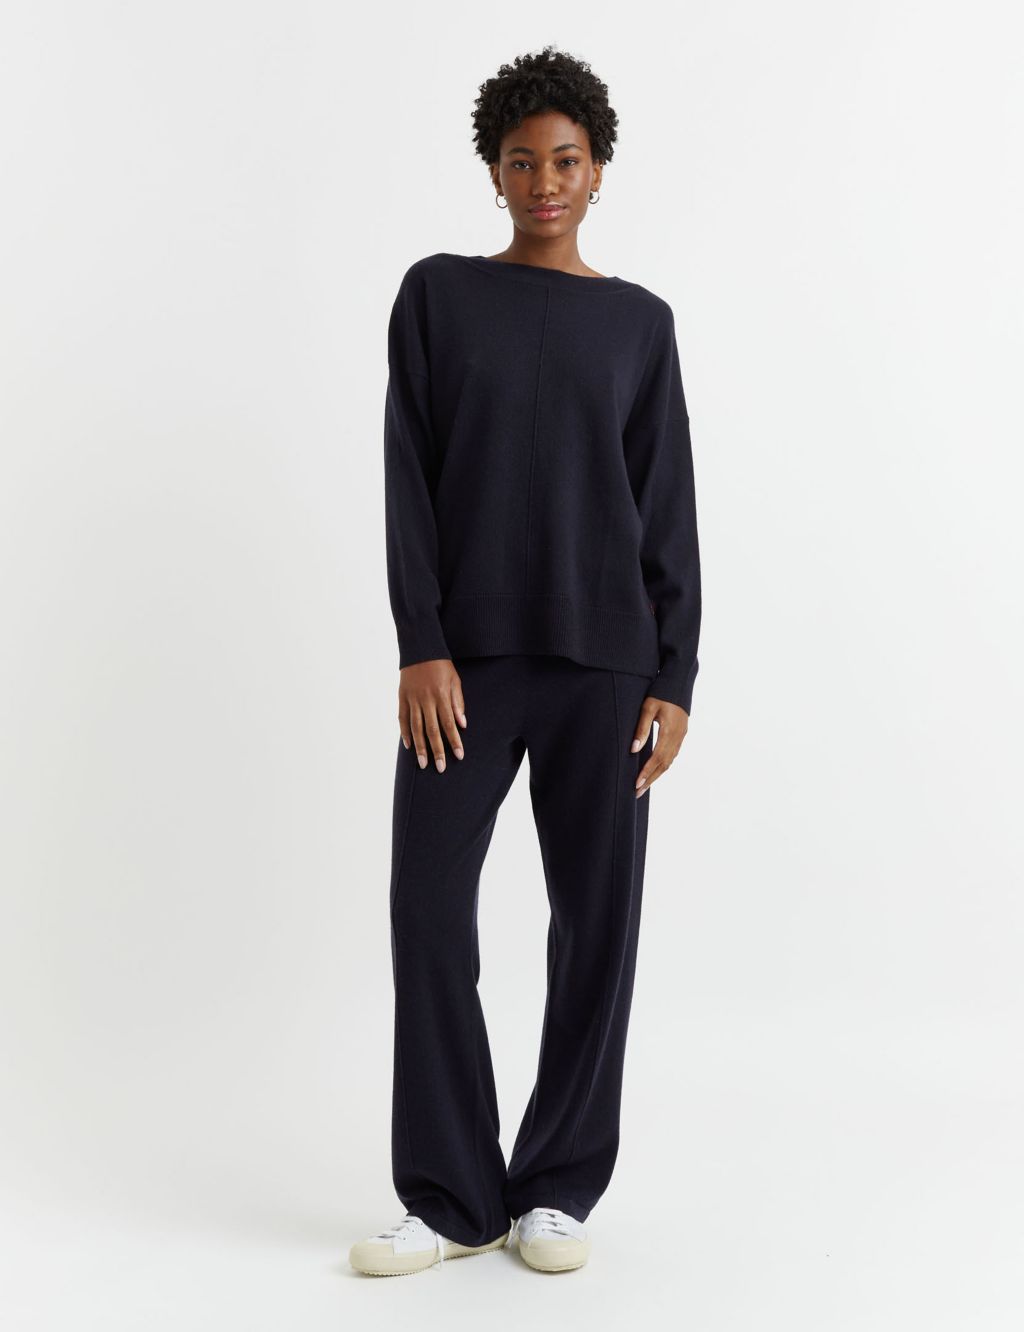 Women’s Cashmere Knitwear |M&S | M&S